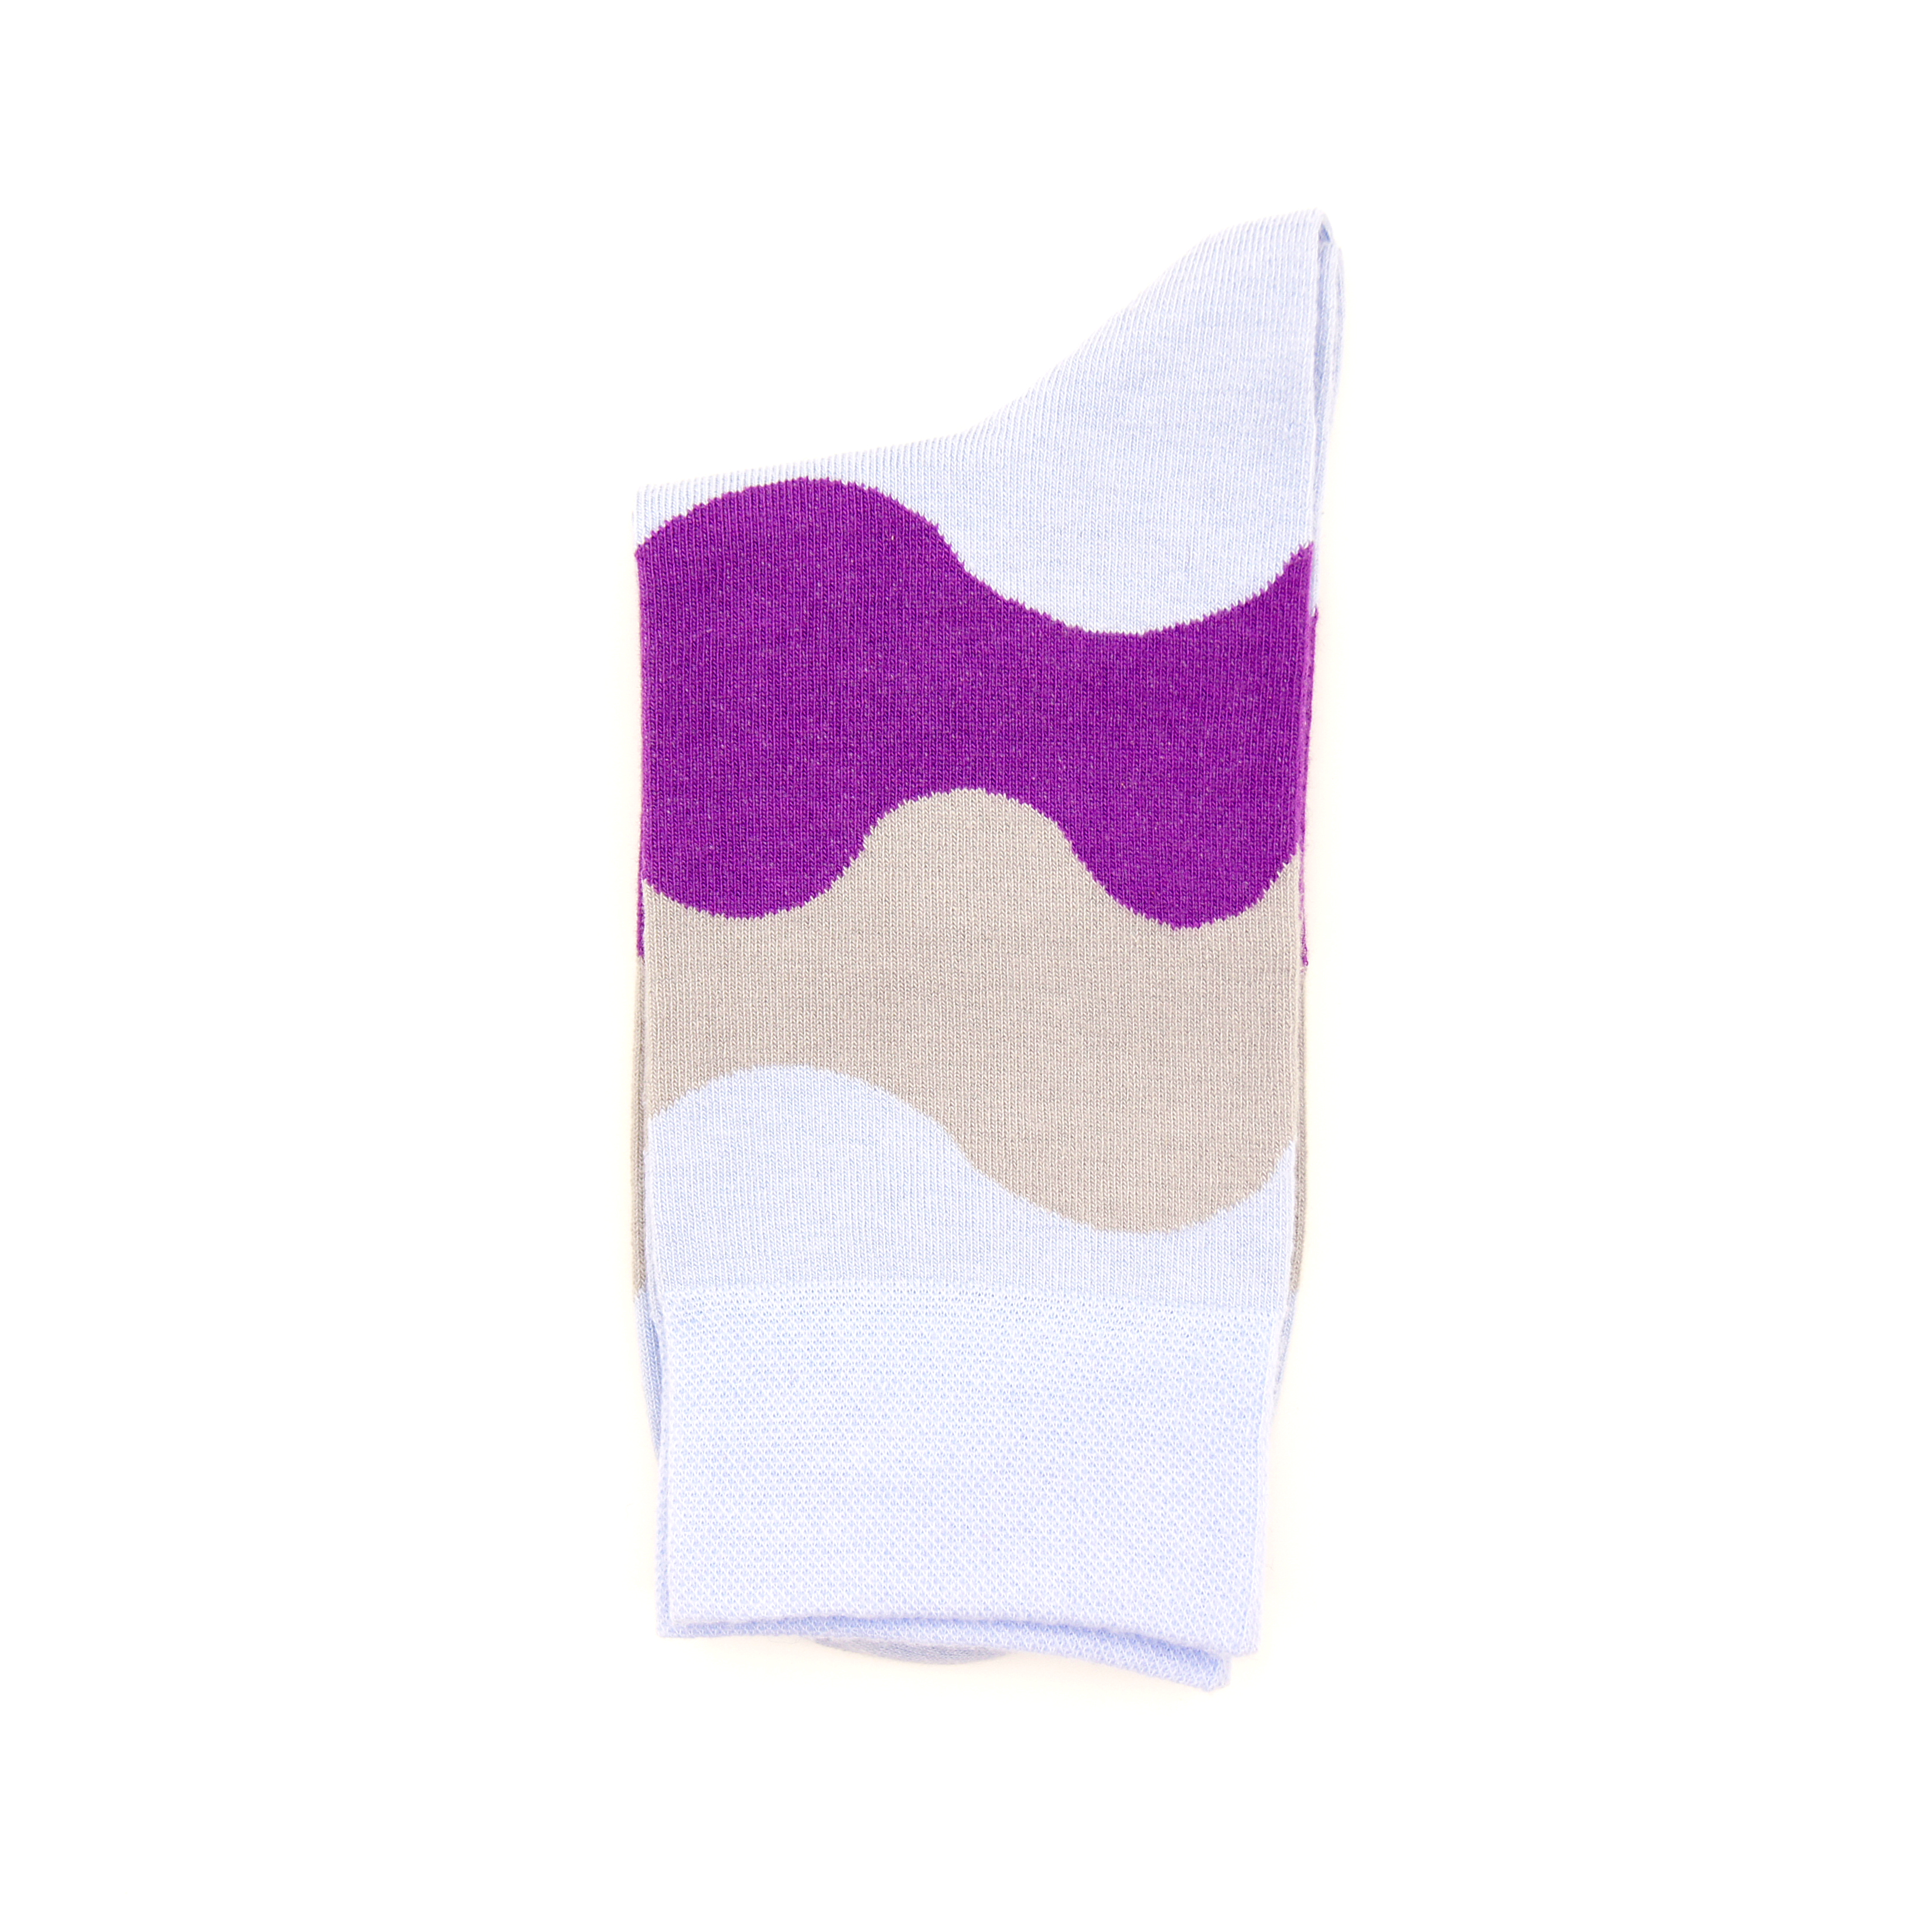 Носки Tezido Мороженое (топаз/фиолетовый) Т2870